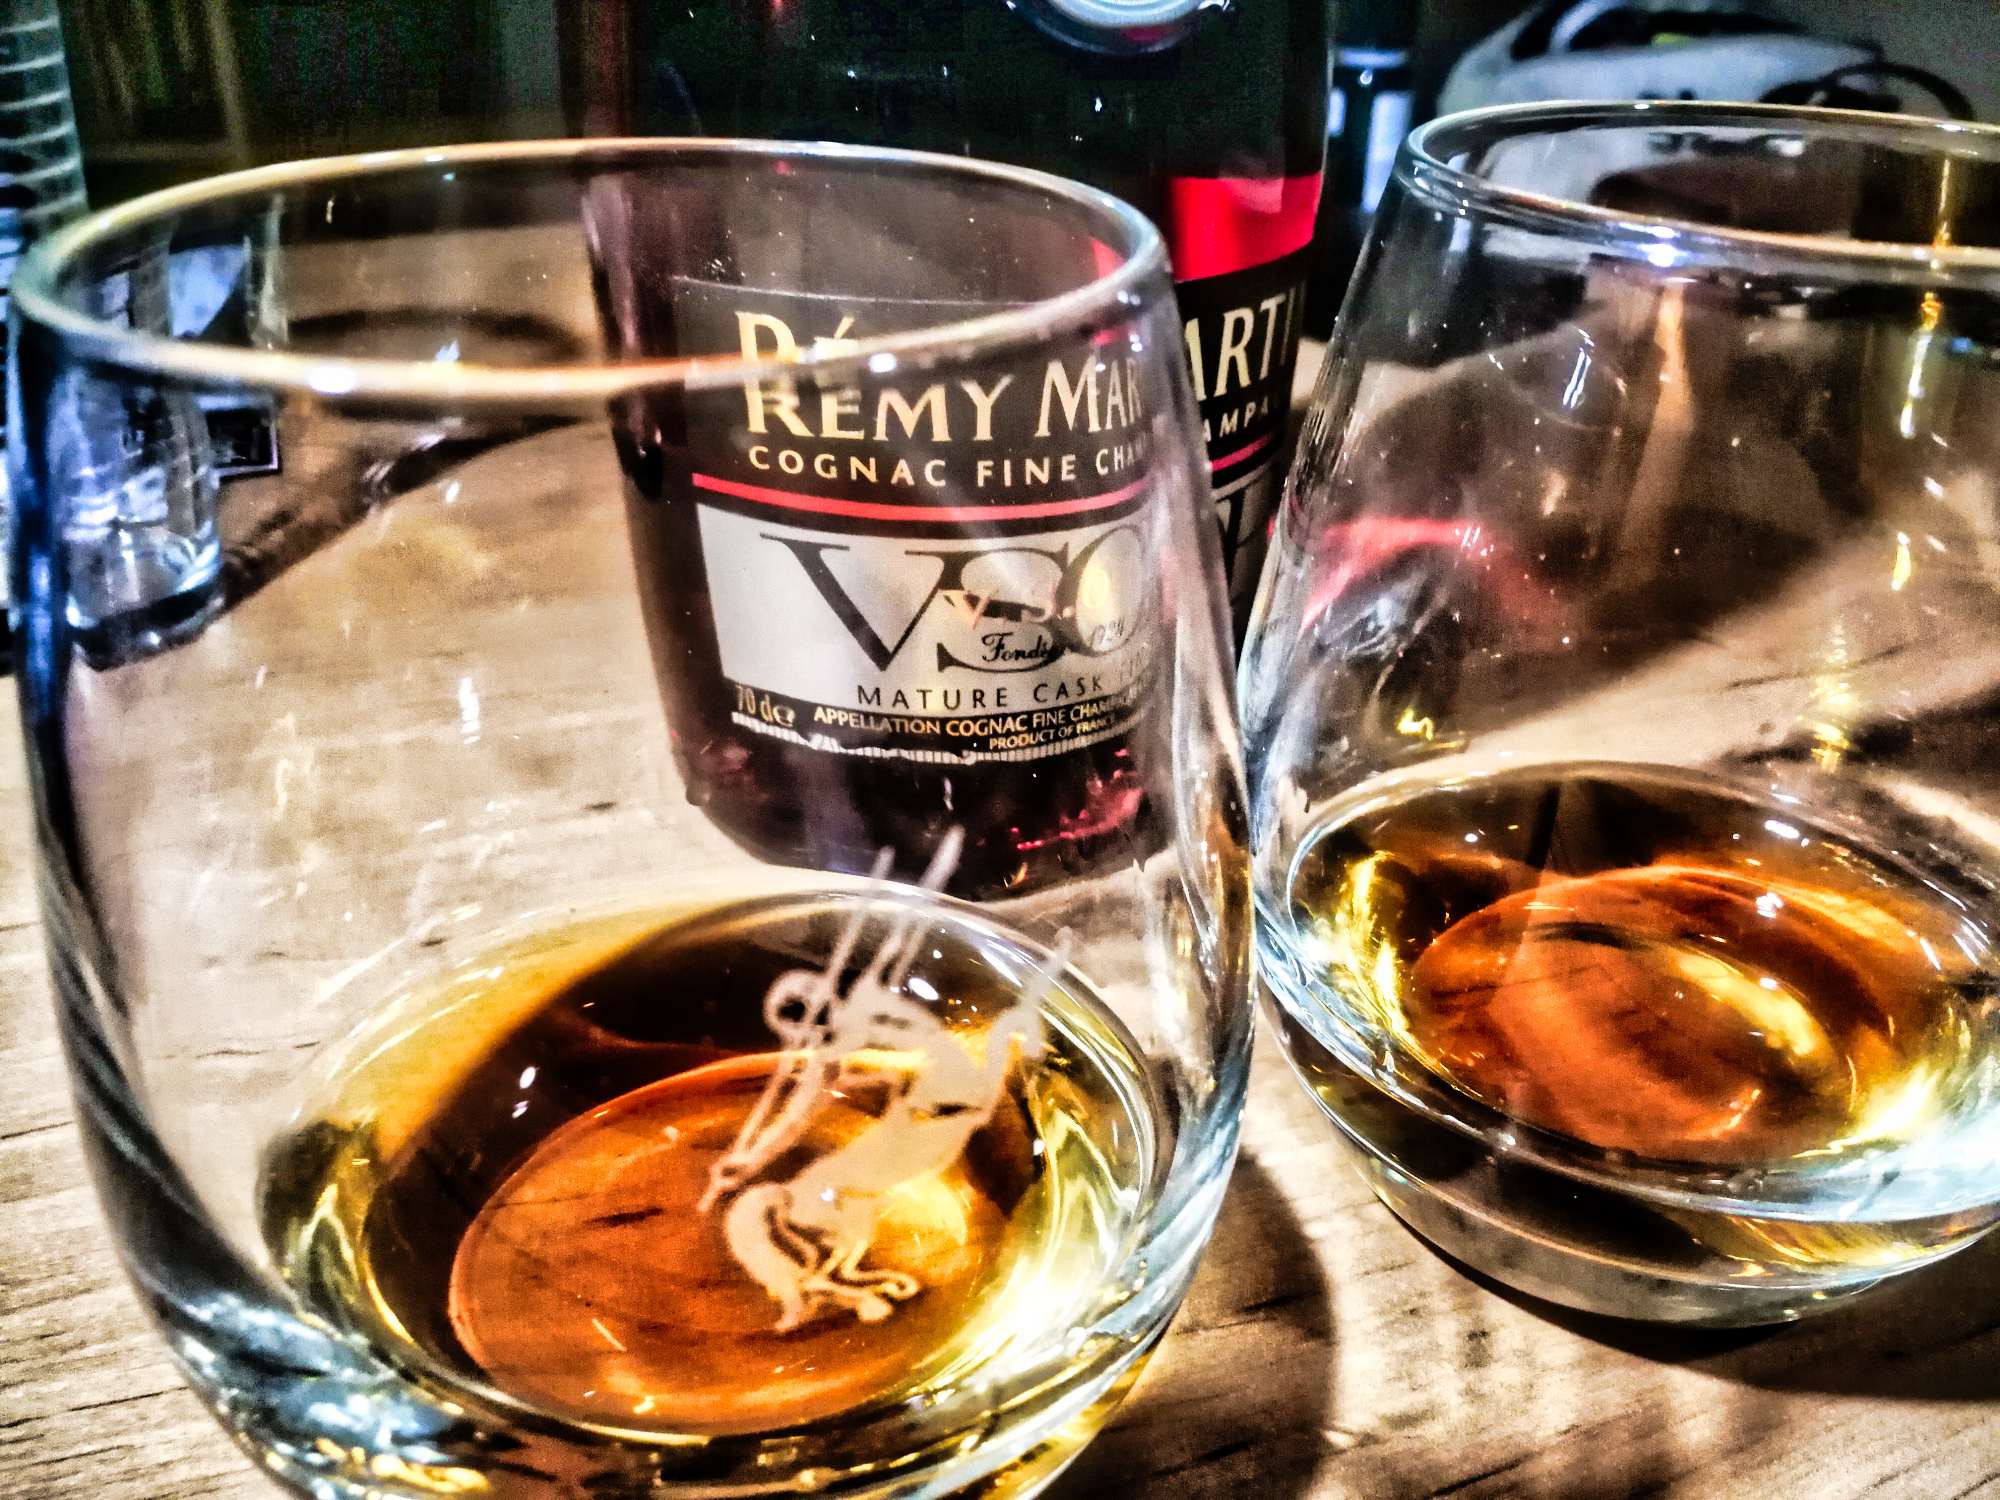 Rémy Martin VSOP Mature Cask Finish Cognac